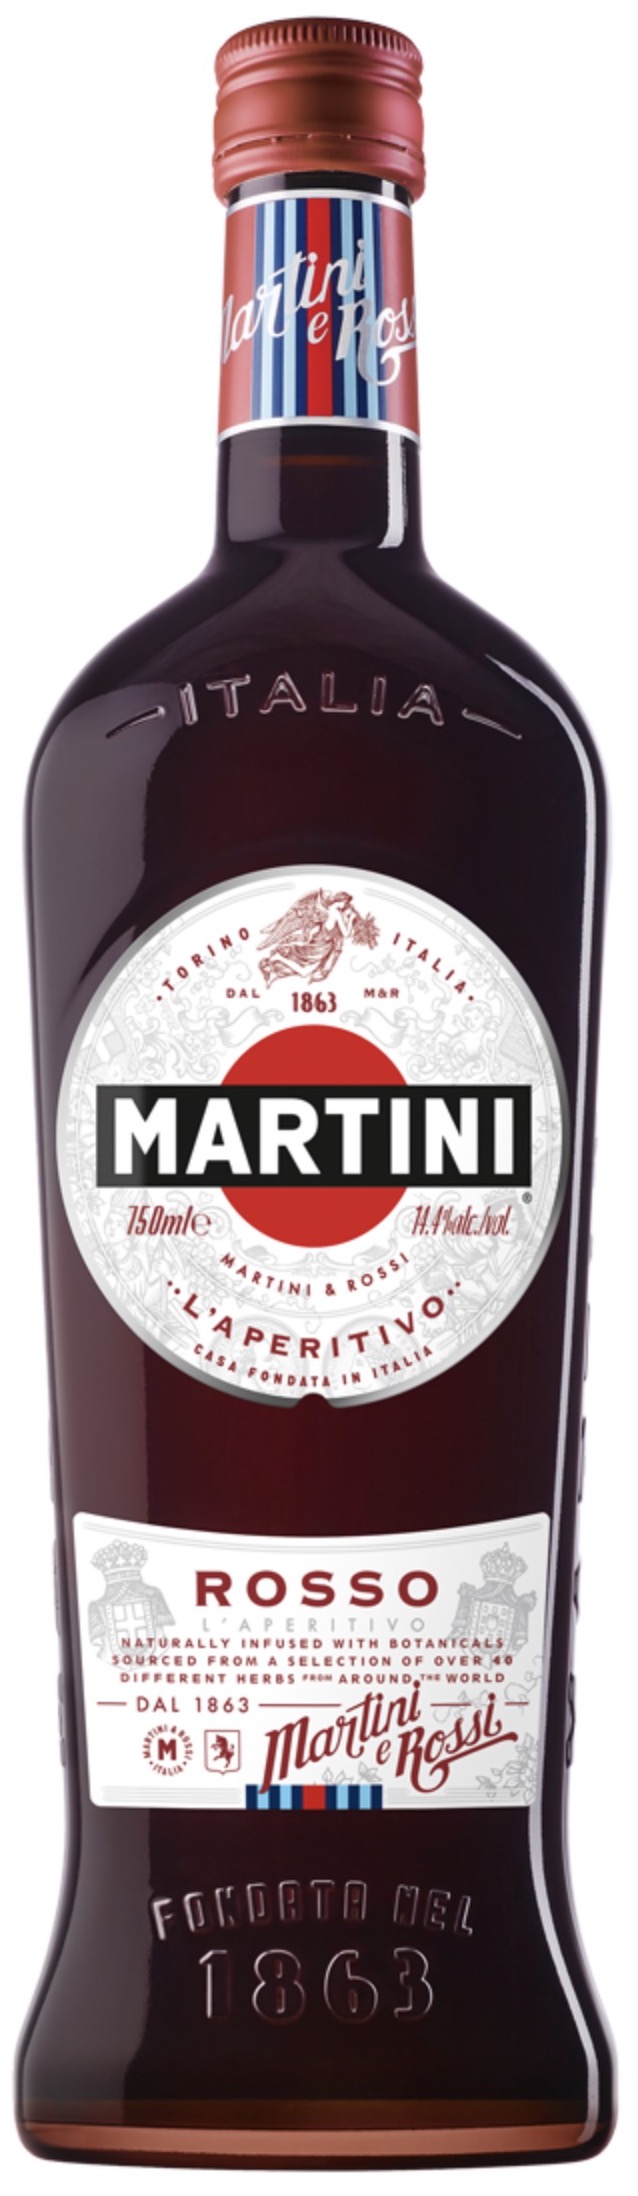 Martini Rosso 14,4% vol. 0,75L